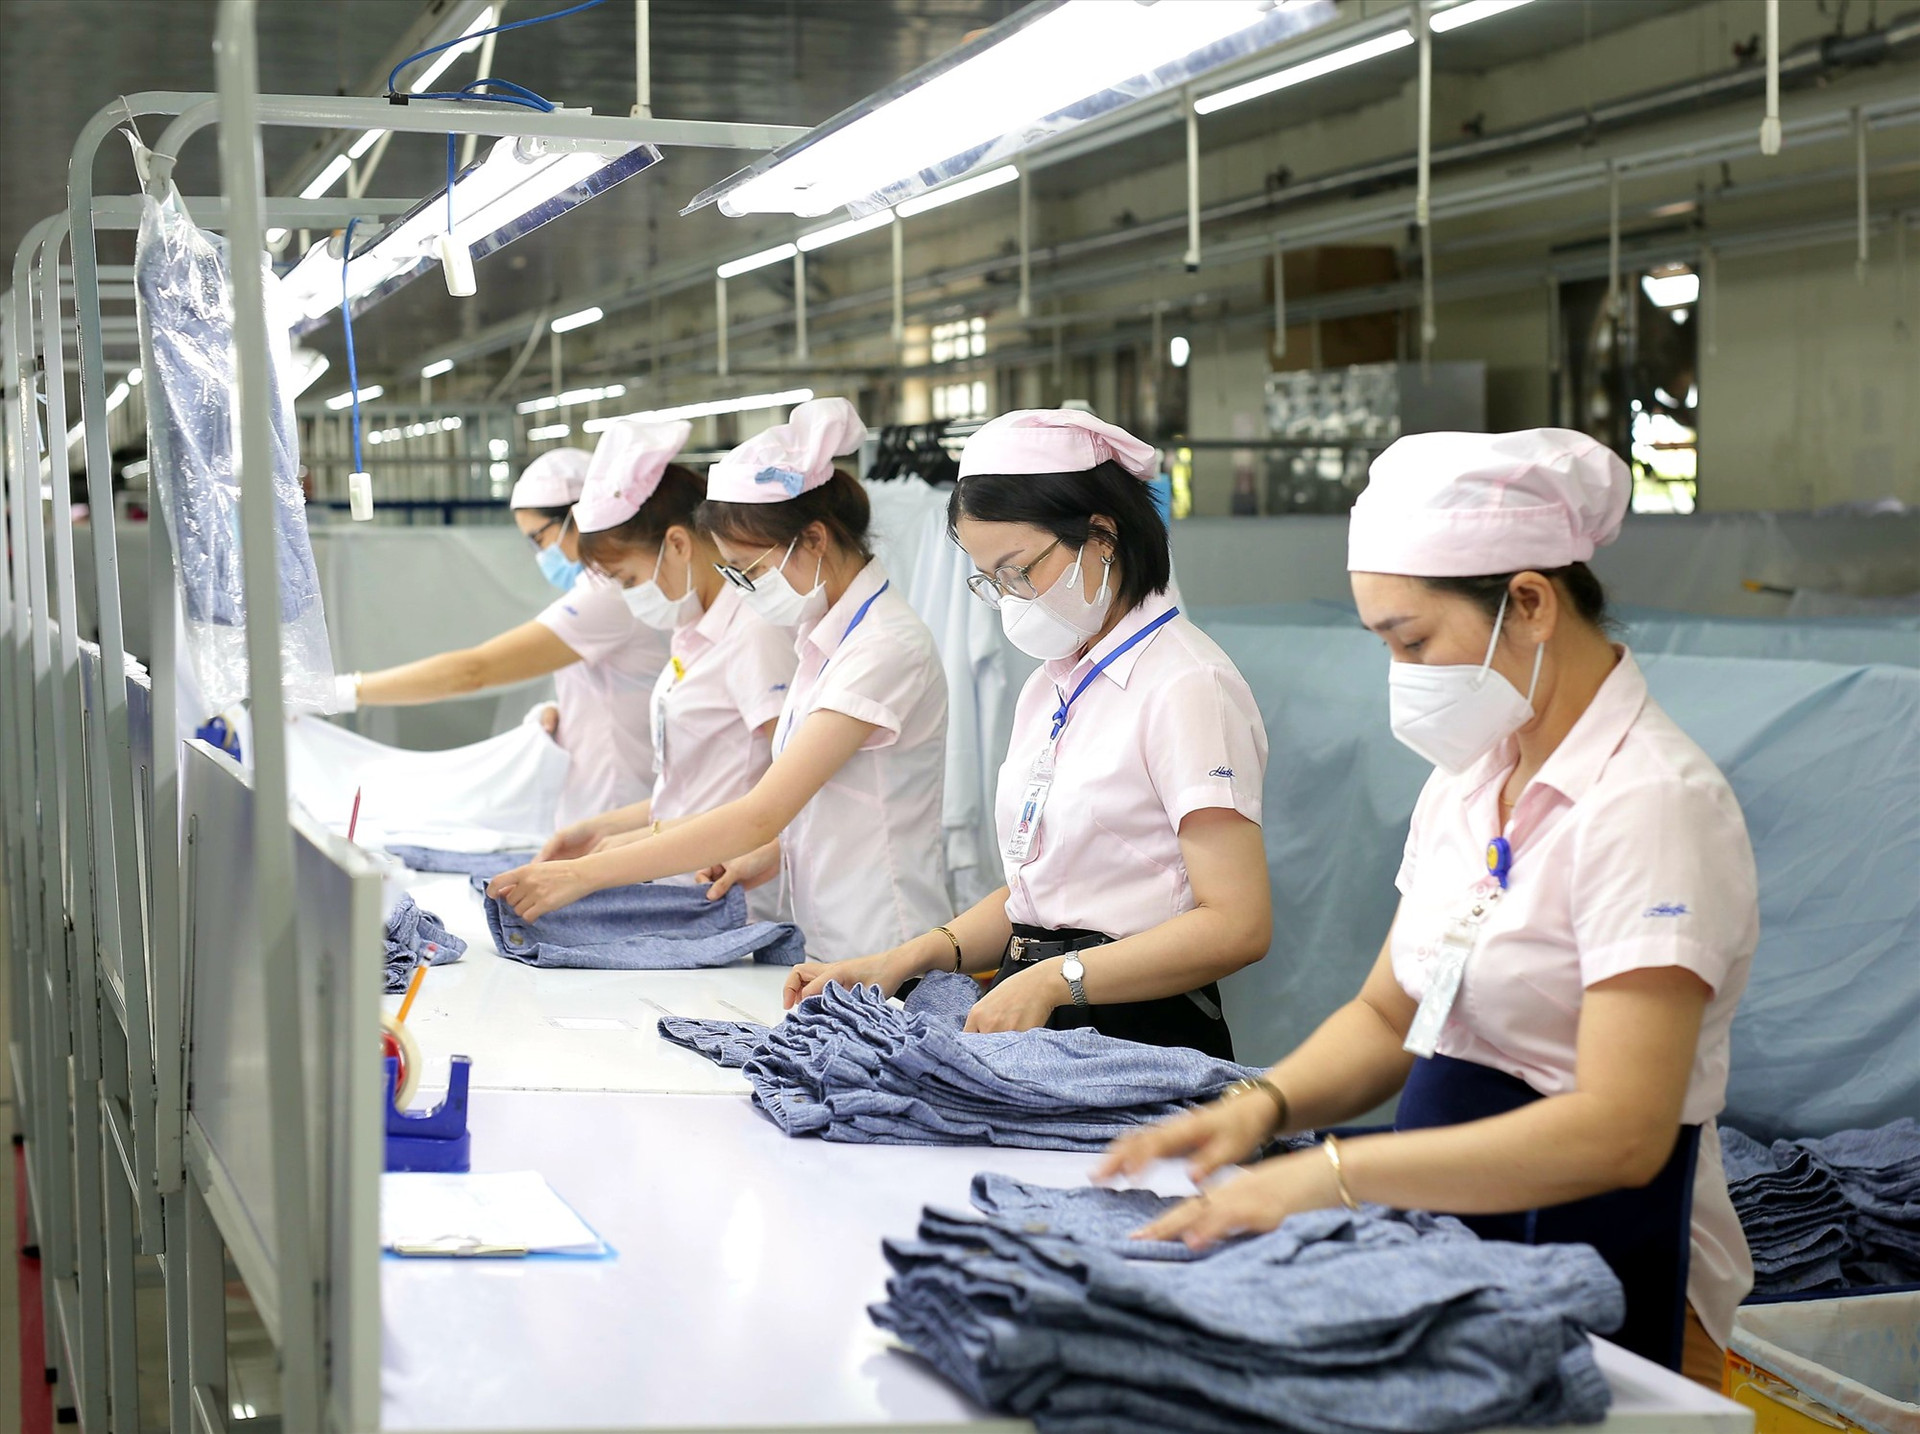 Nhờ nỗ lực thu hút doanh nghiệp vào đầu tư, hàng nghìn lao động nông thôn của Quế Sơn có công ăn việc làm ổn định tại các nhà máy, xí nghiệp. Ảnh: N.S